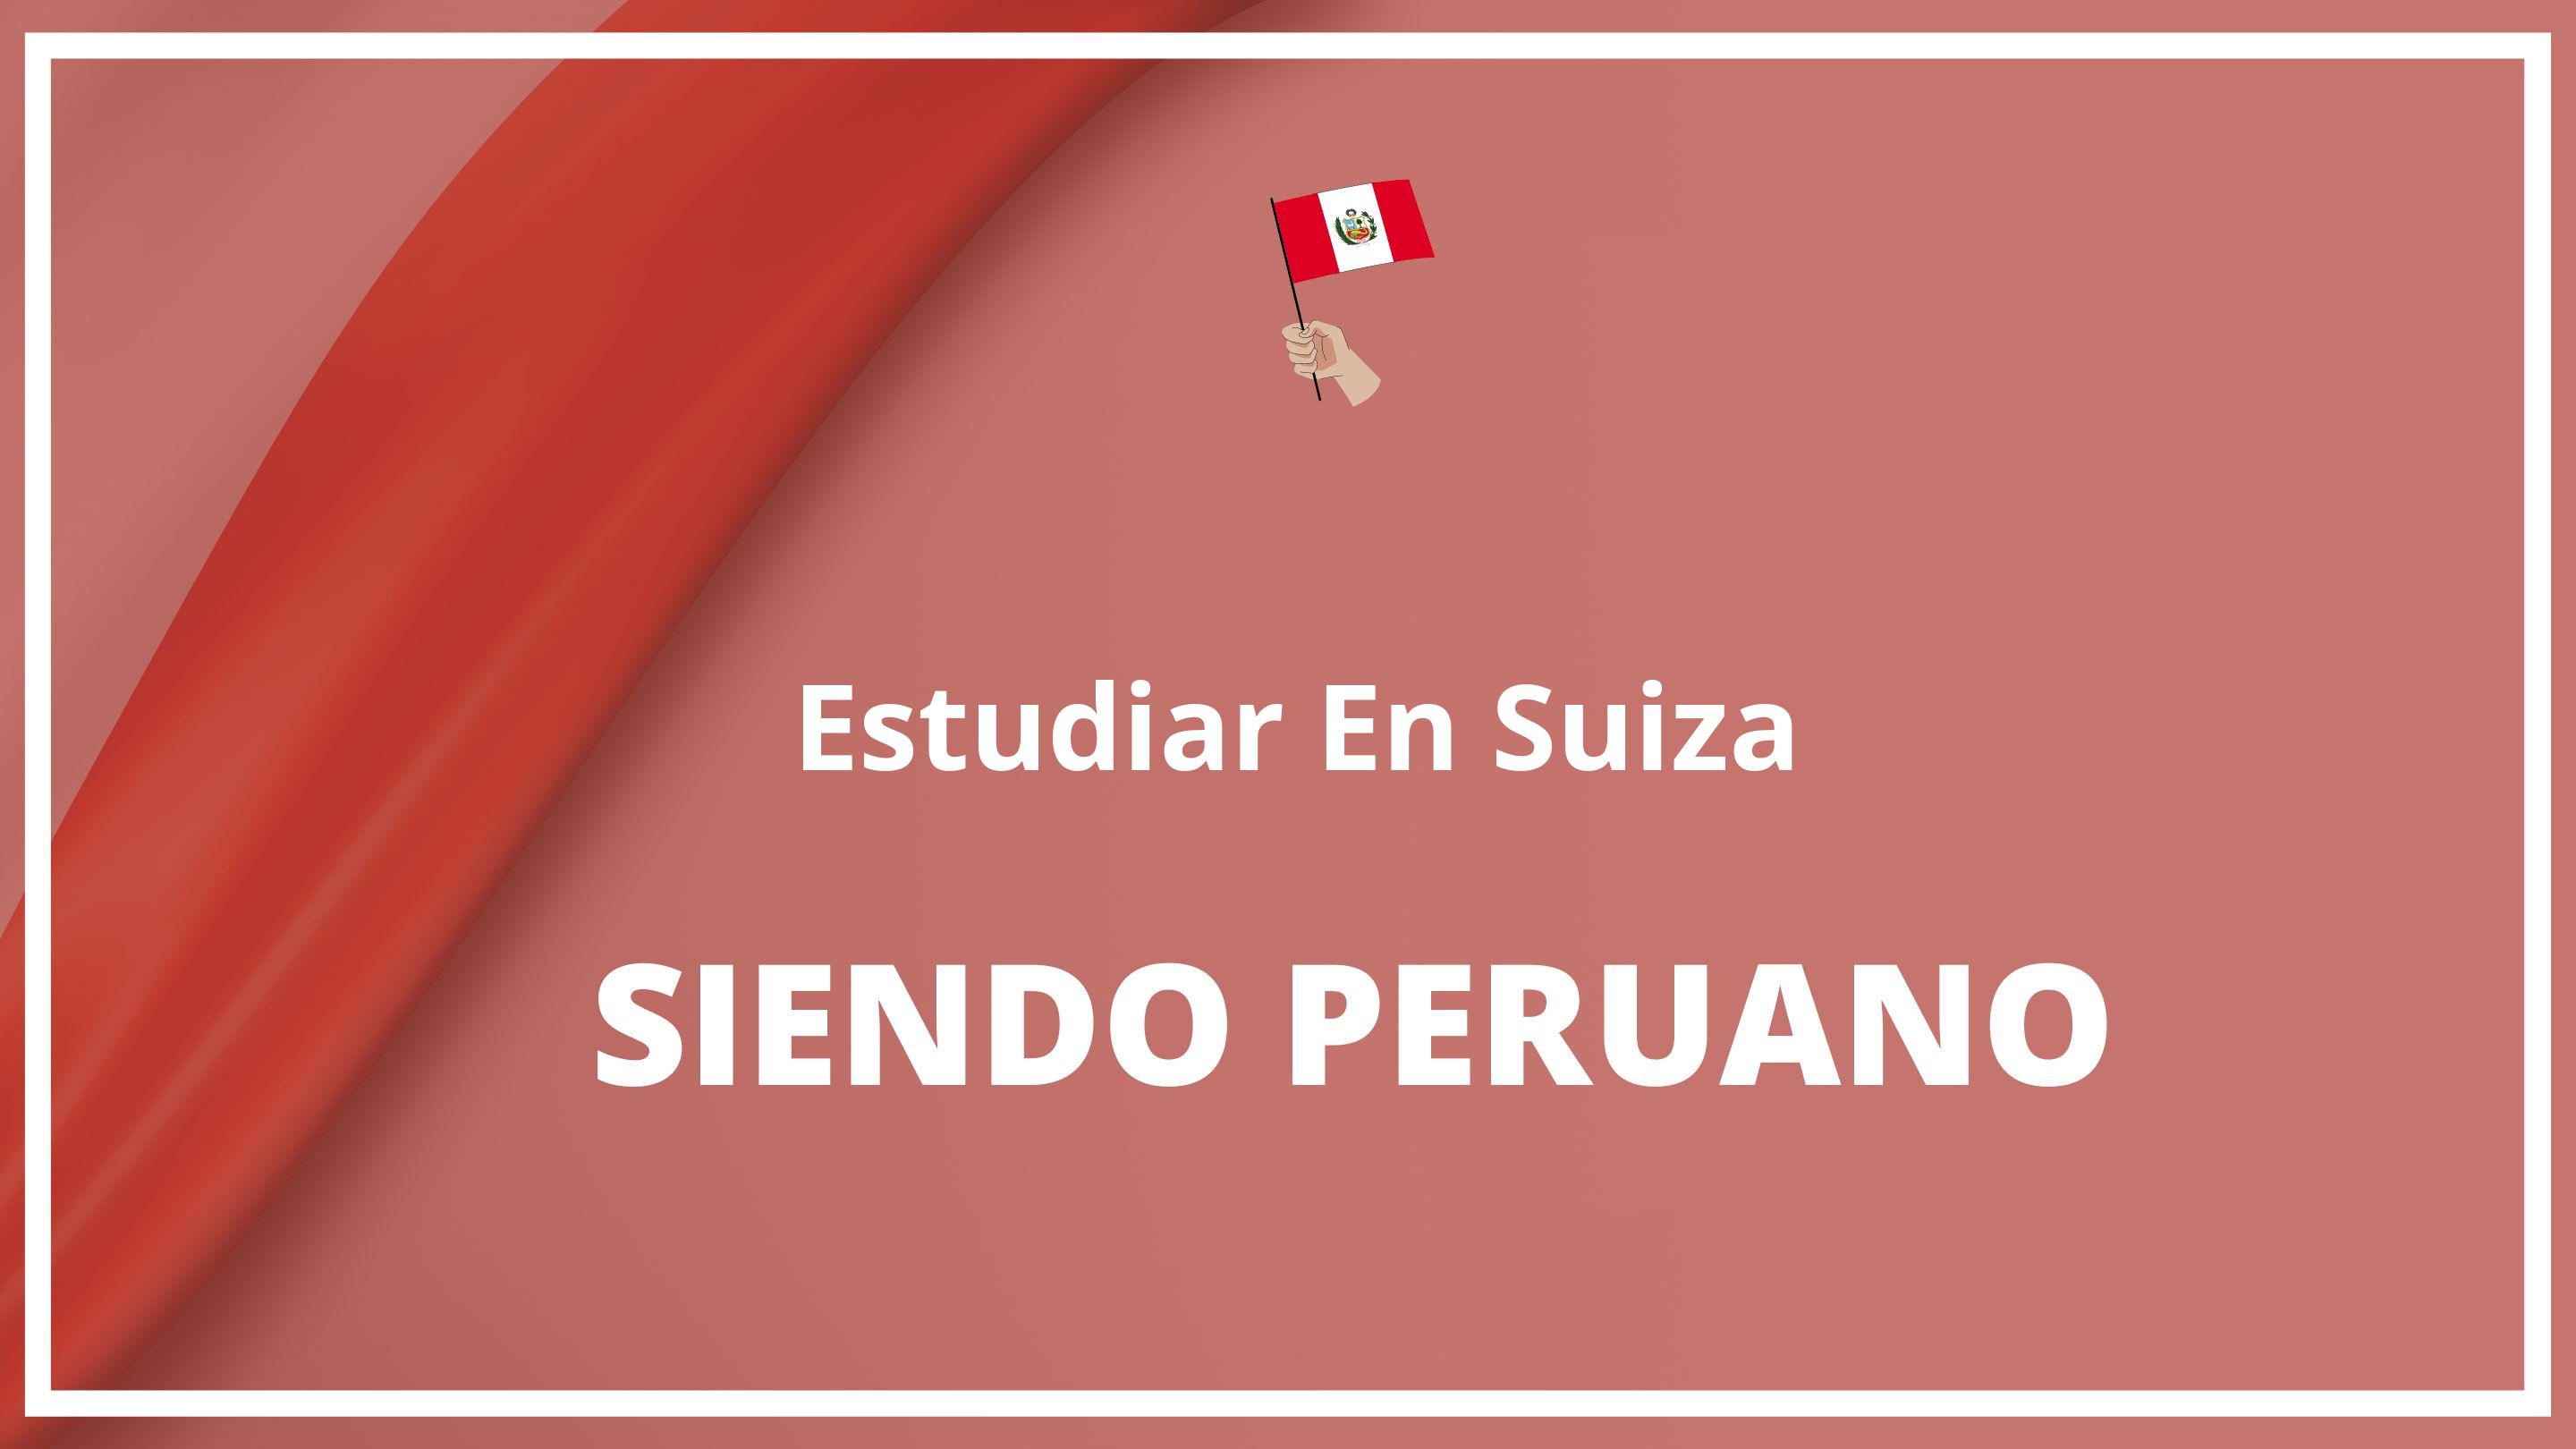 Como estudiar en suiza siendo peruano